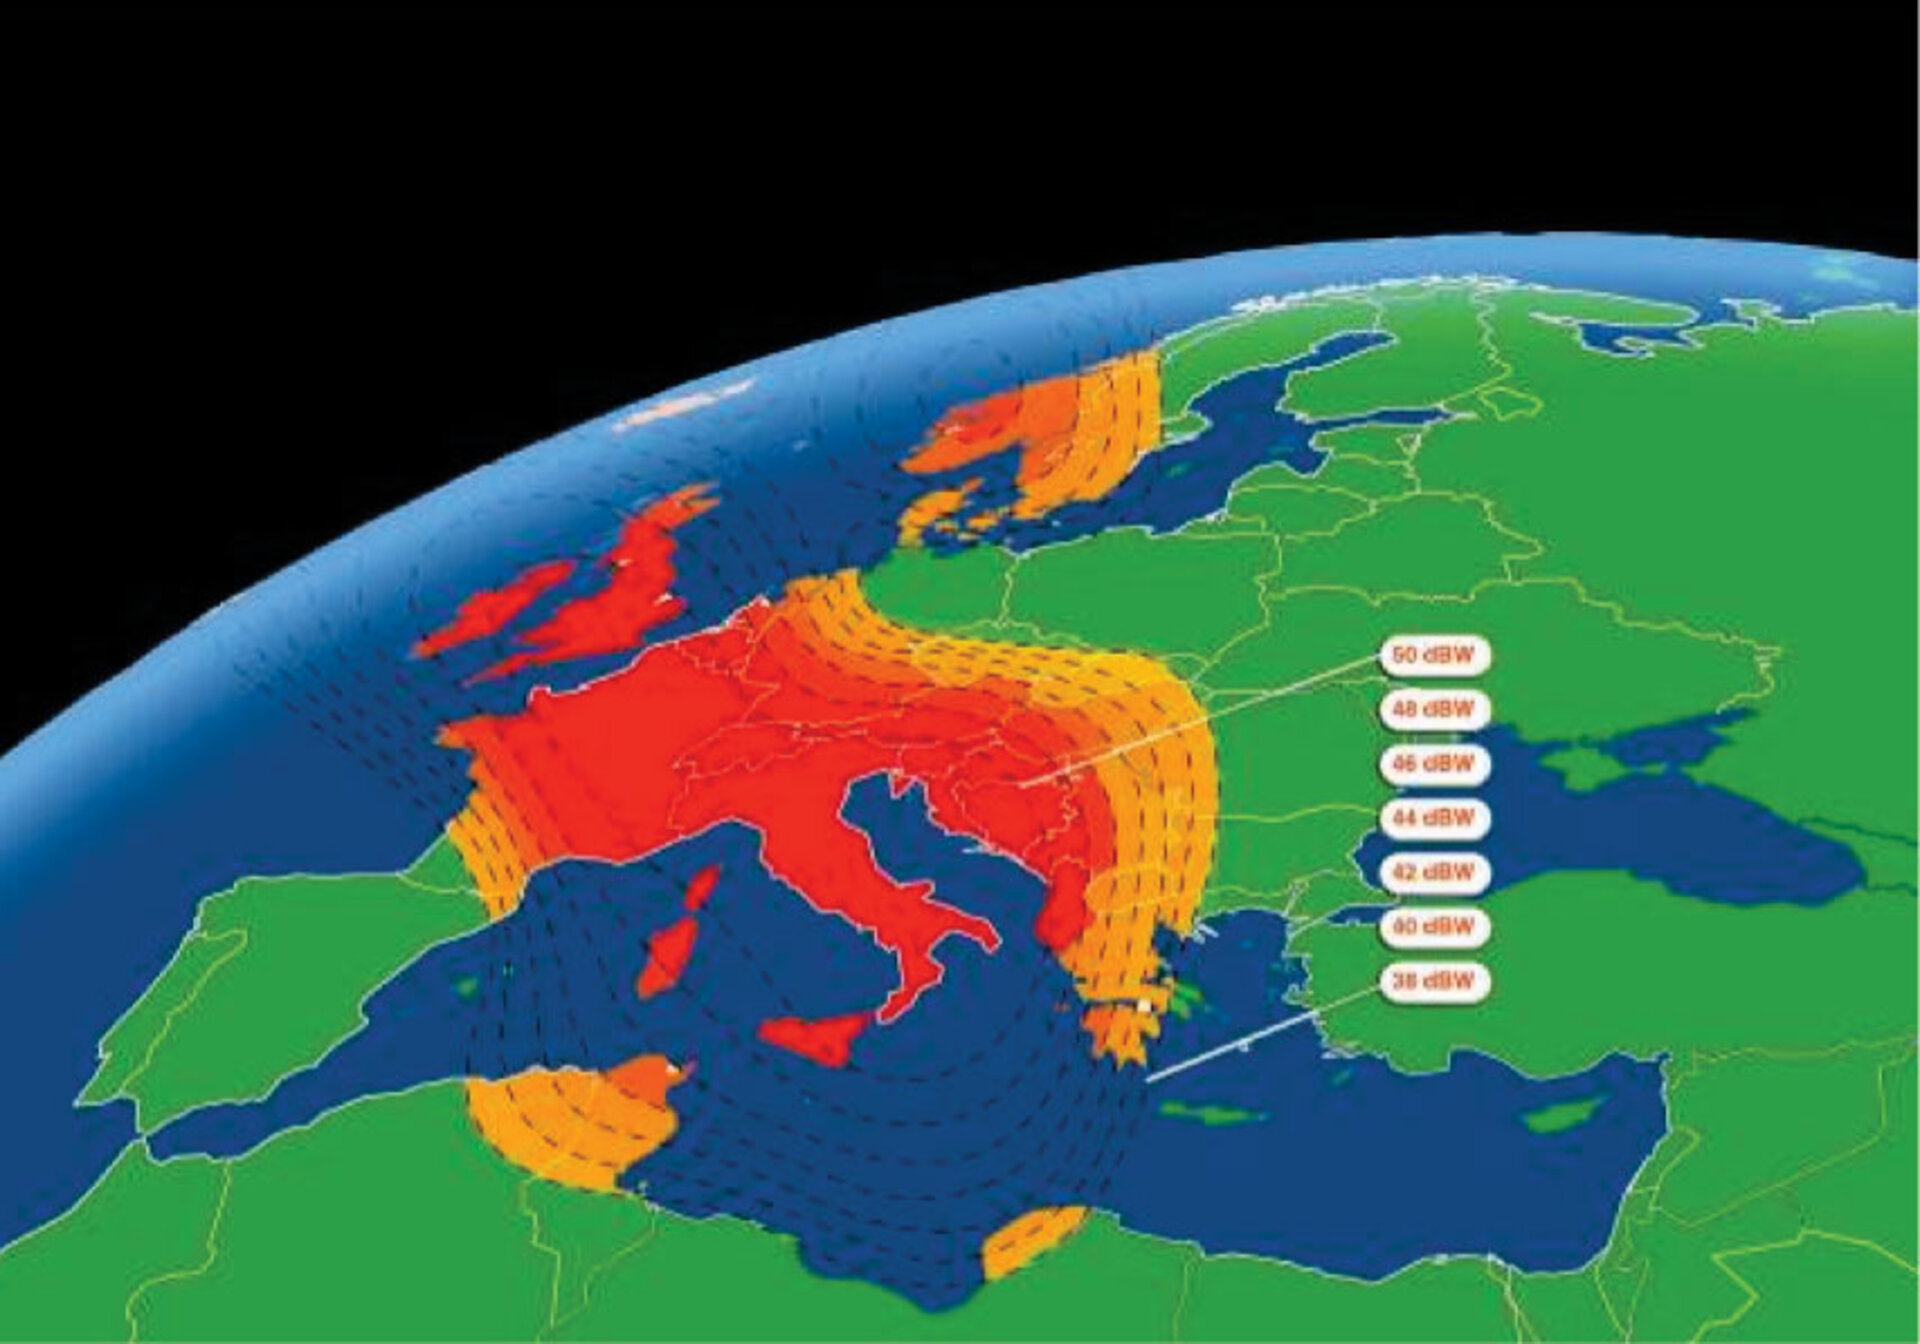 Coverage map for Eutelsat's Eurobird-3